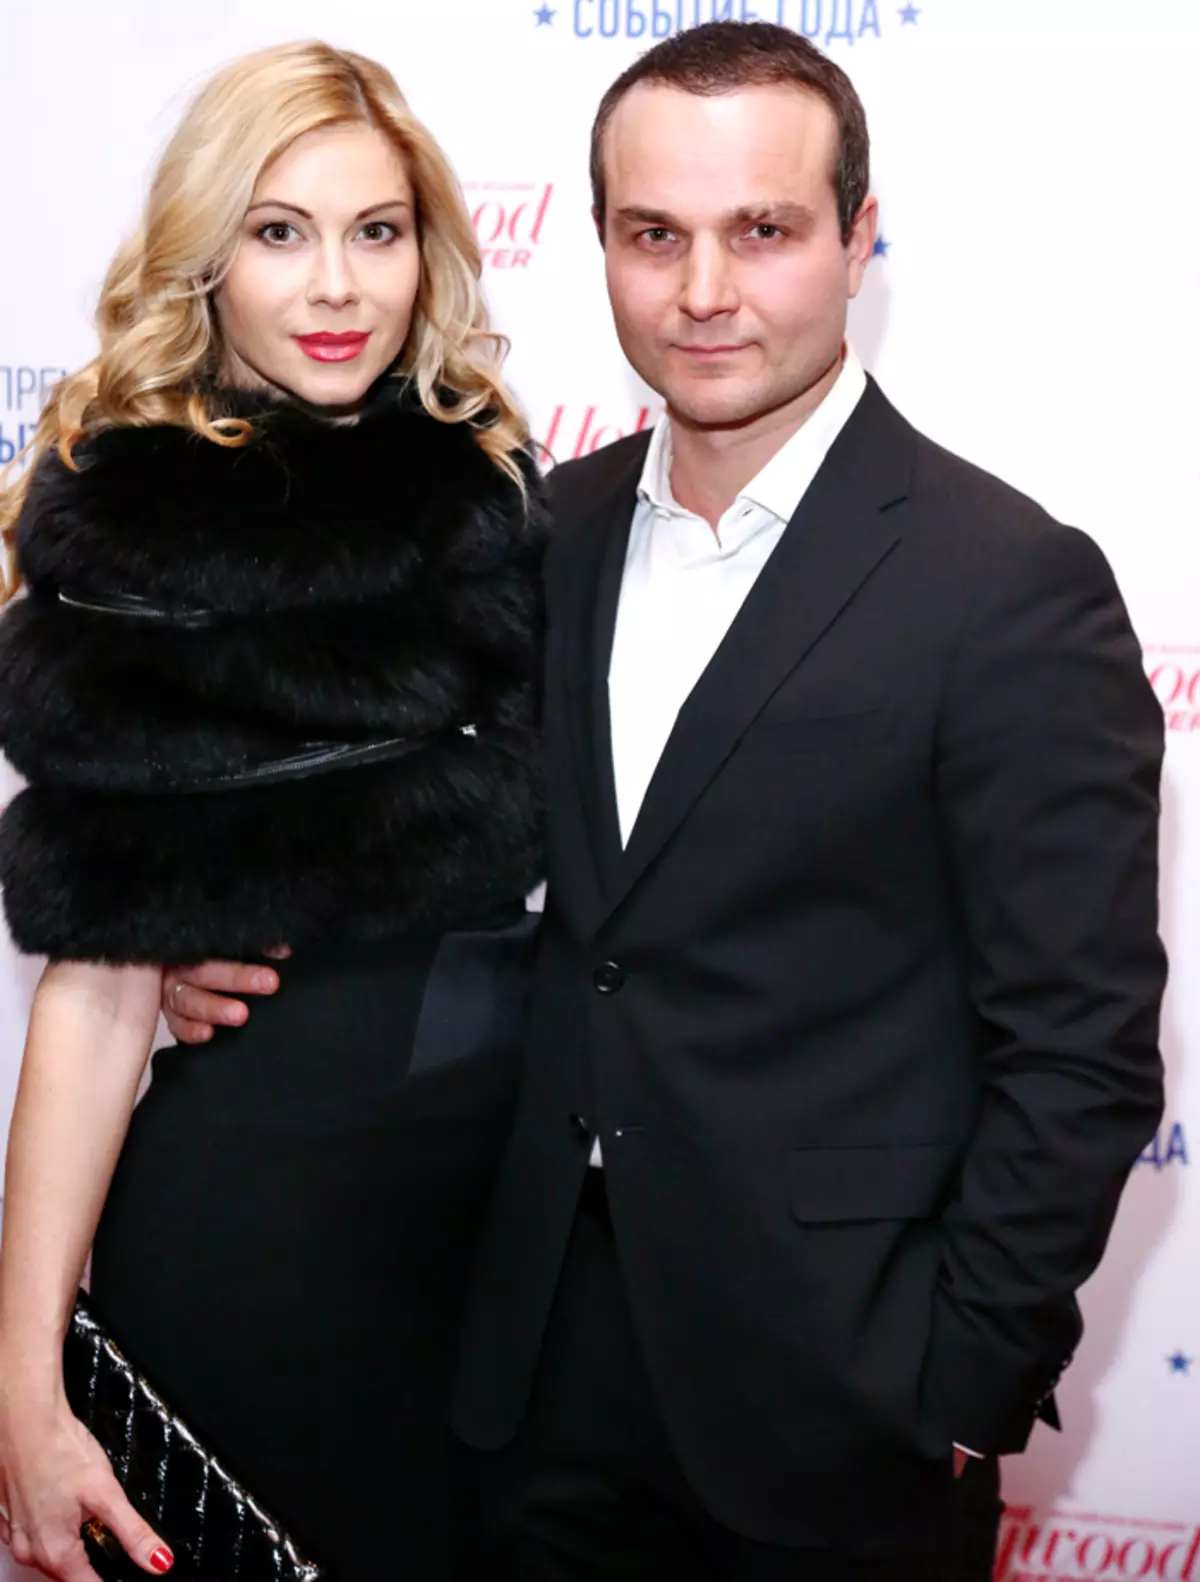 Με τον σύζυγό της, ο Dmitry Klepacksky Nevsky συναντήθηκε στο σετ